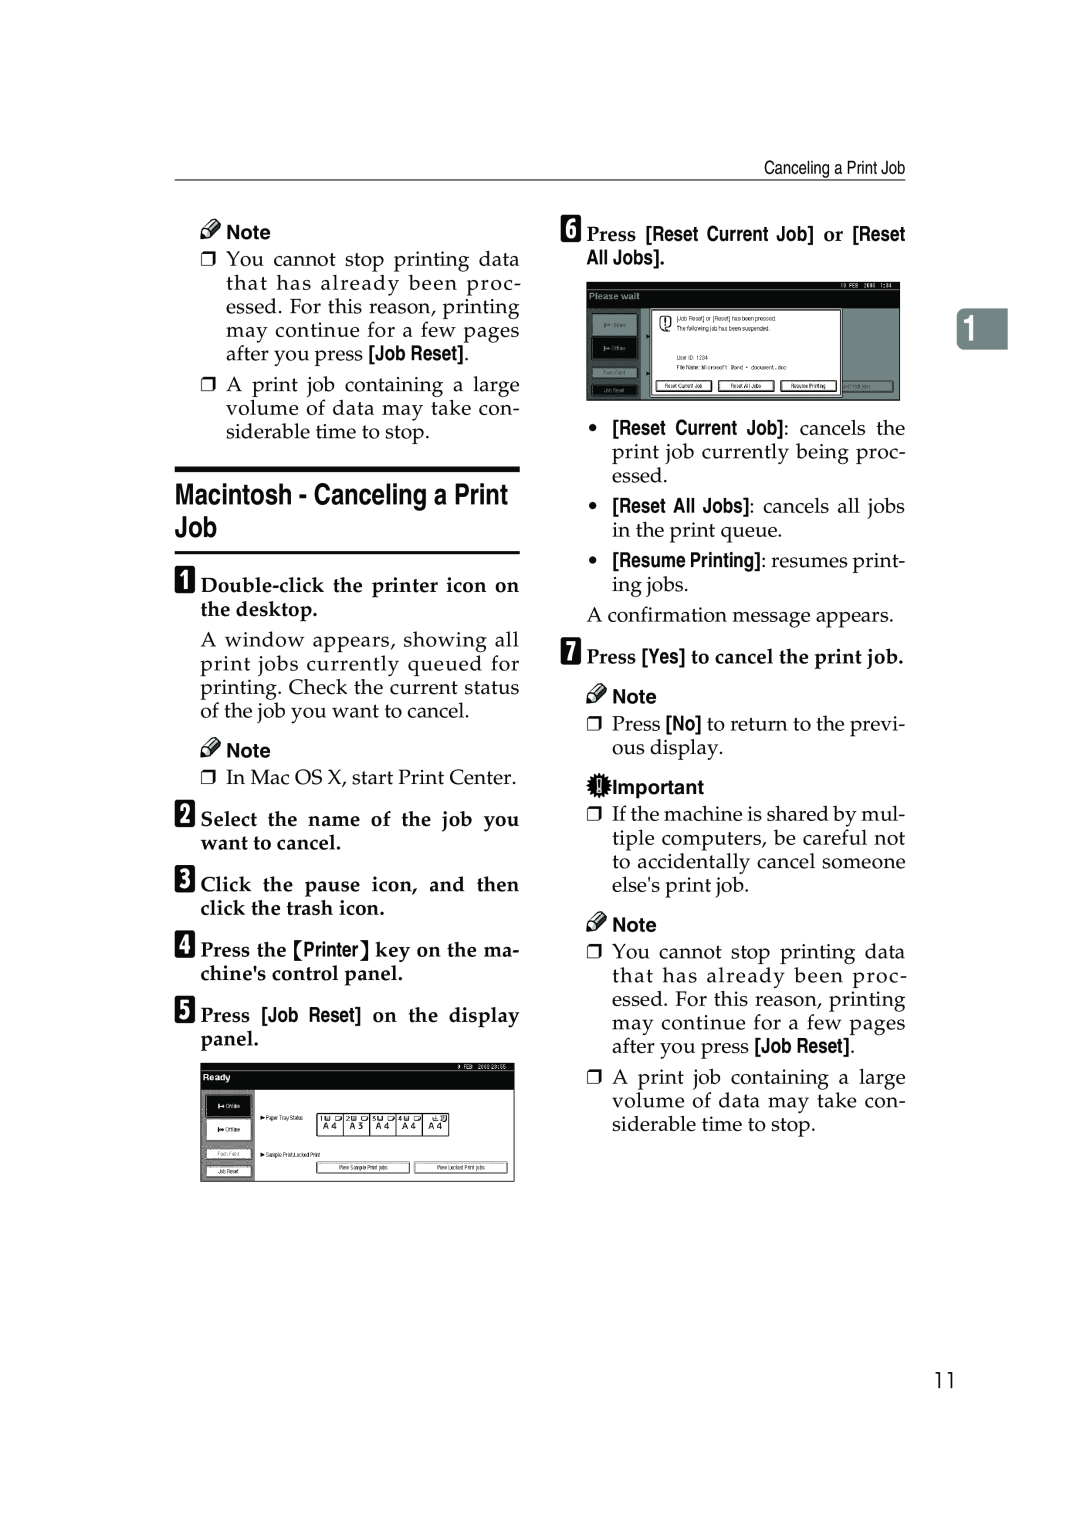 Xerox 2045e appendix Macintosh - Canceling a Print Job, A Double-click the printer icon on the desktop 